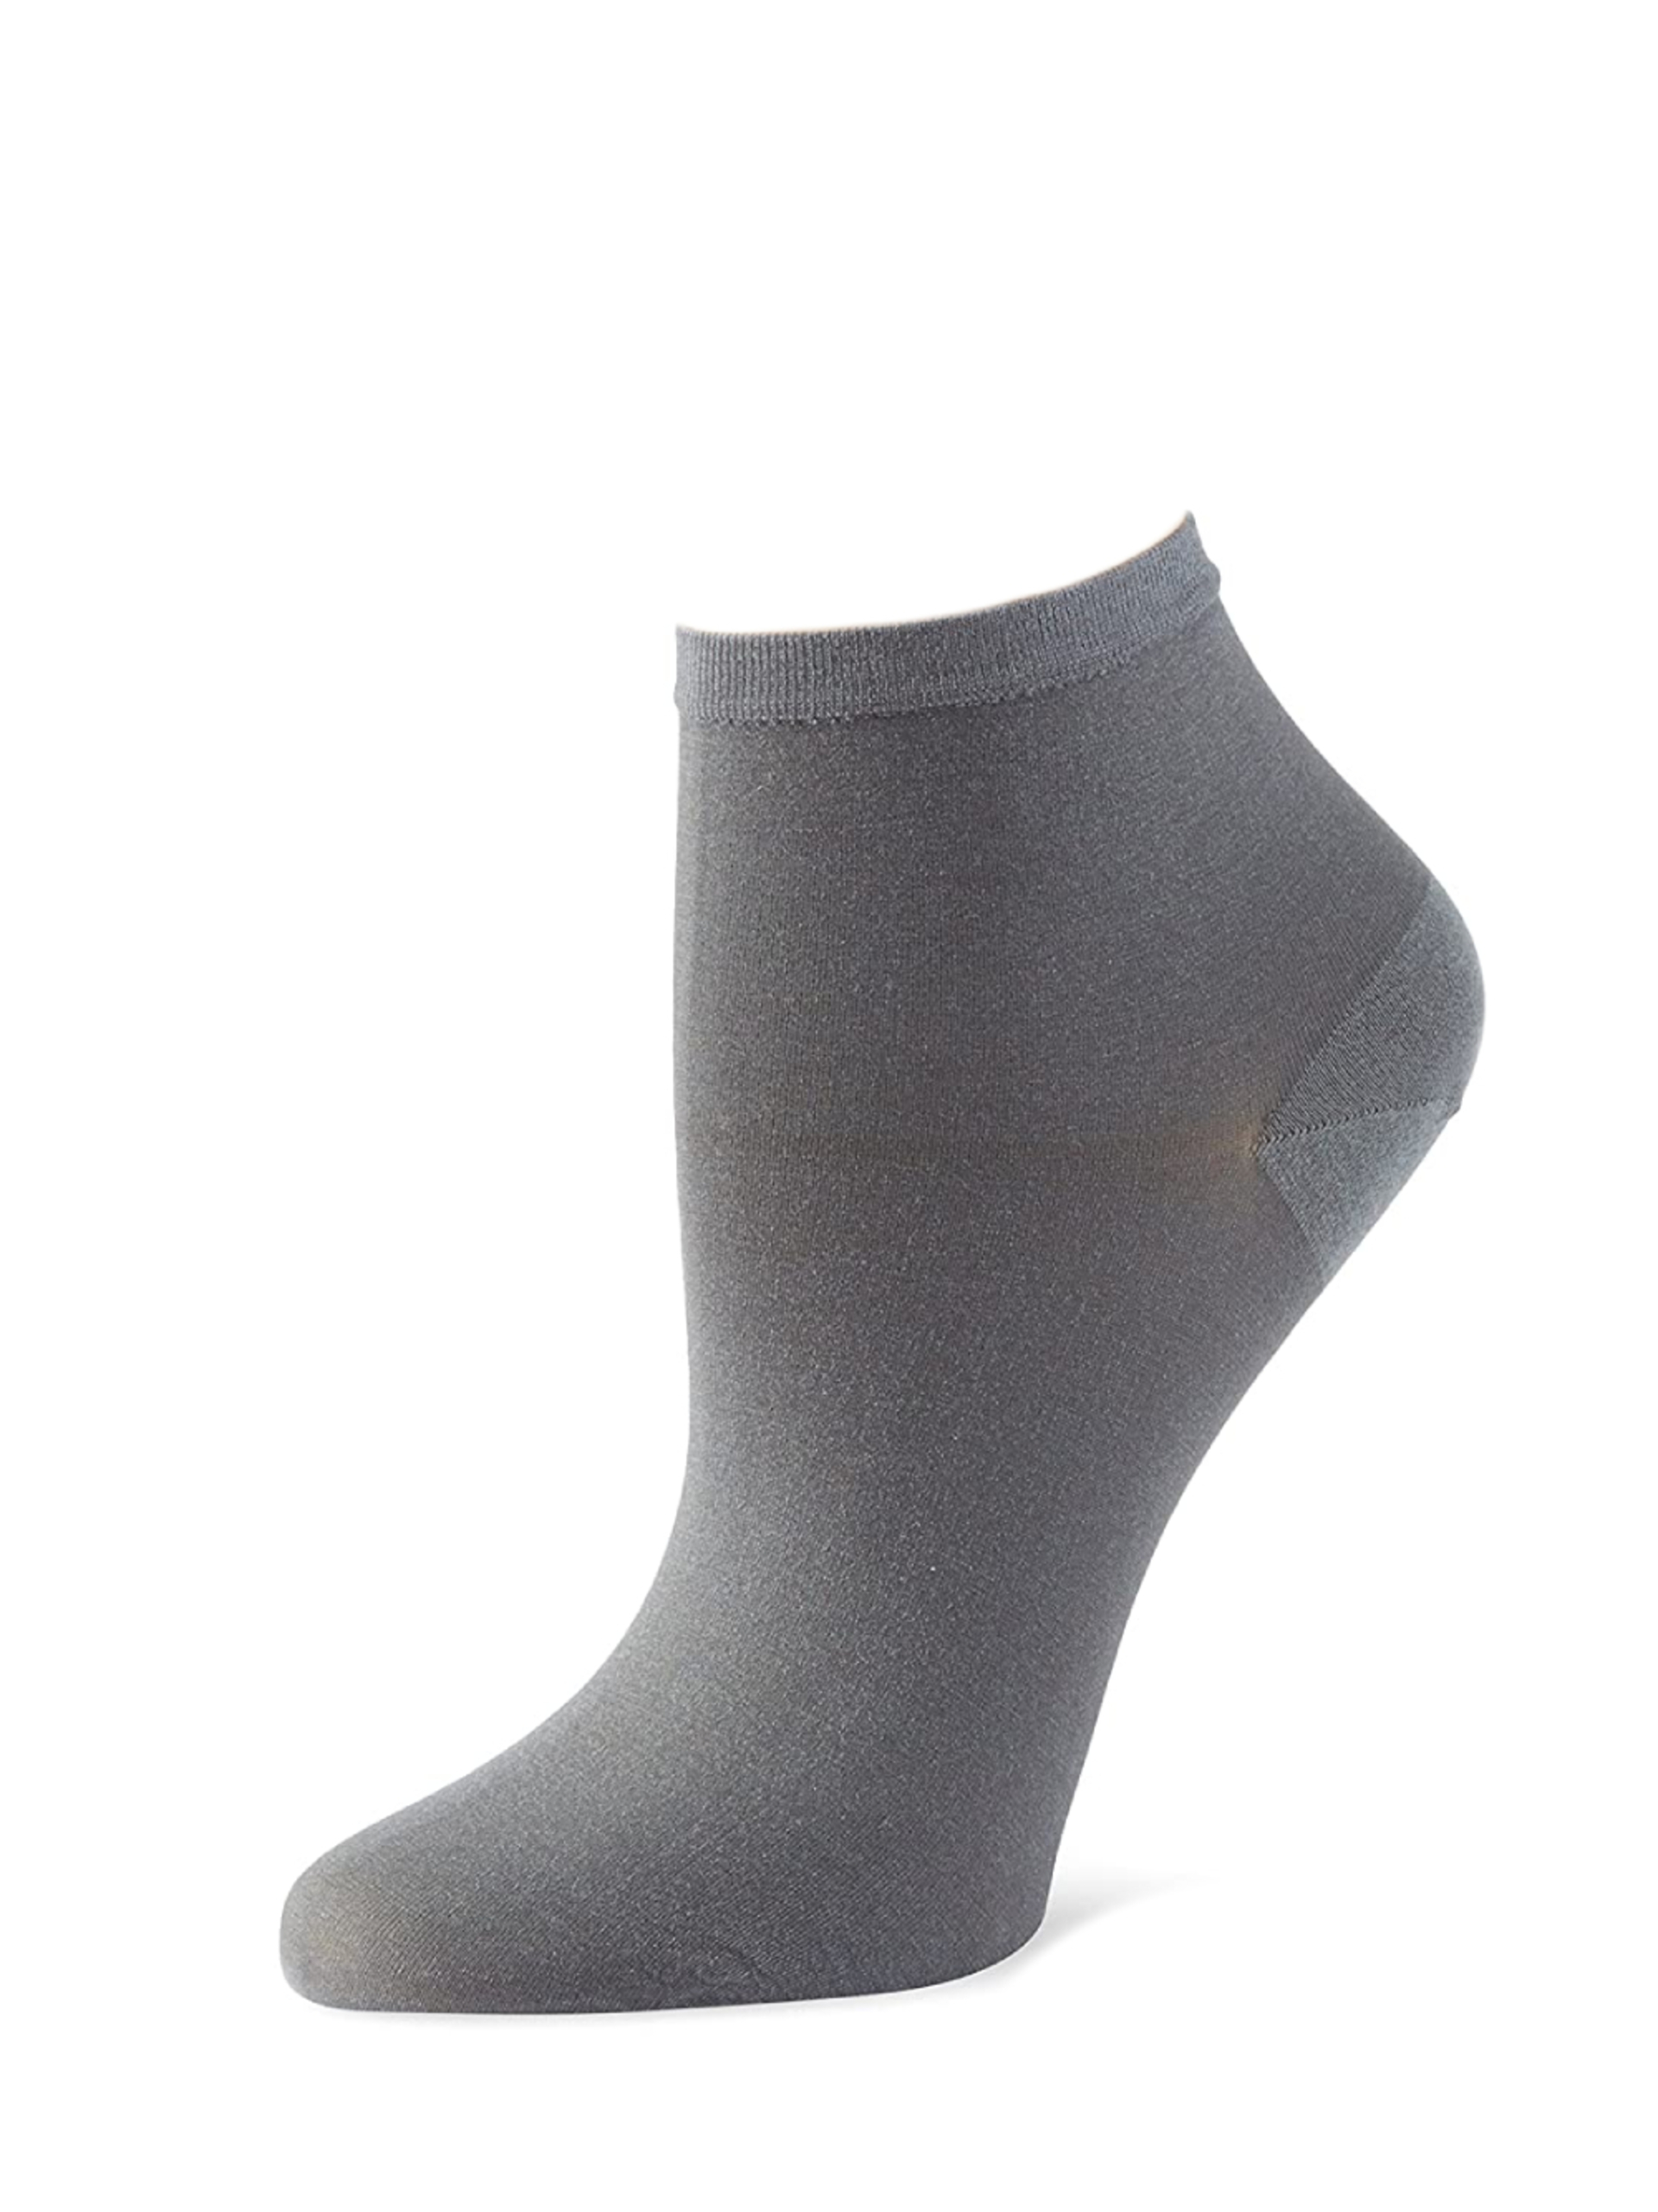 Tommy Hilfiger dámske šedé ponožky 2 pack - 35 (201)